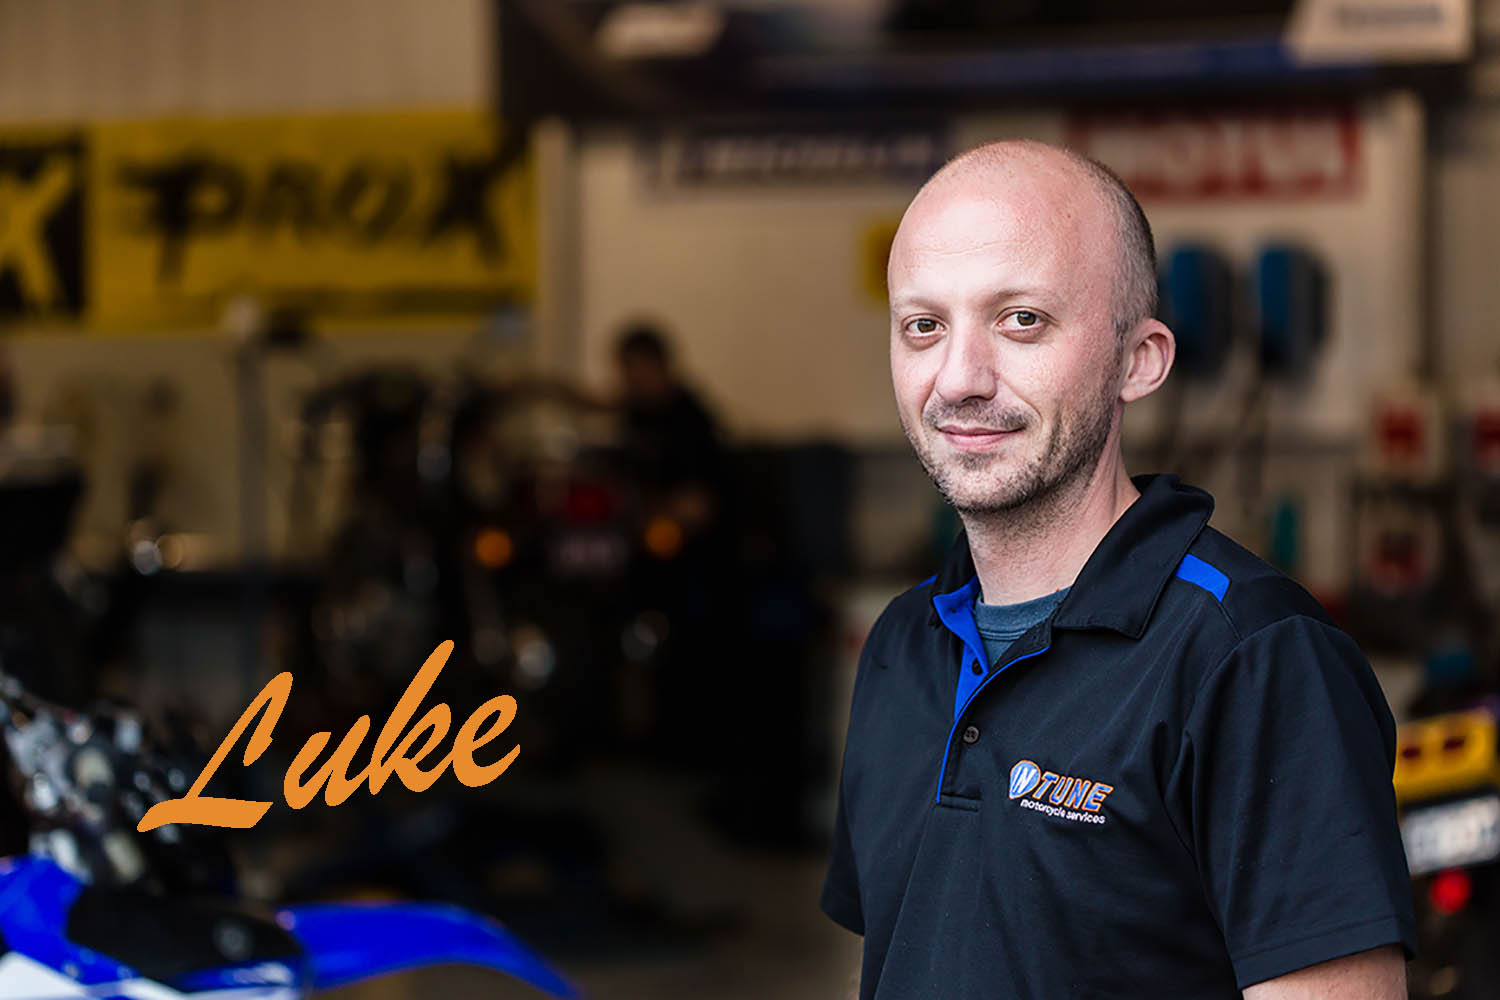 intune-motorcycle-repairs-luke-copy